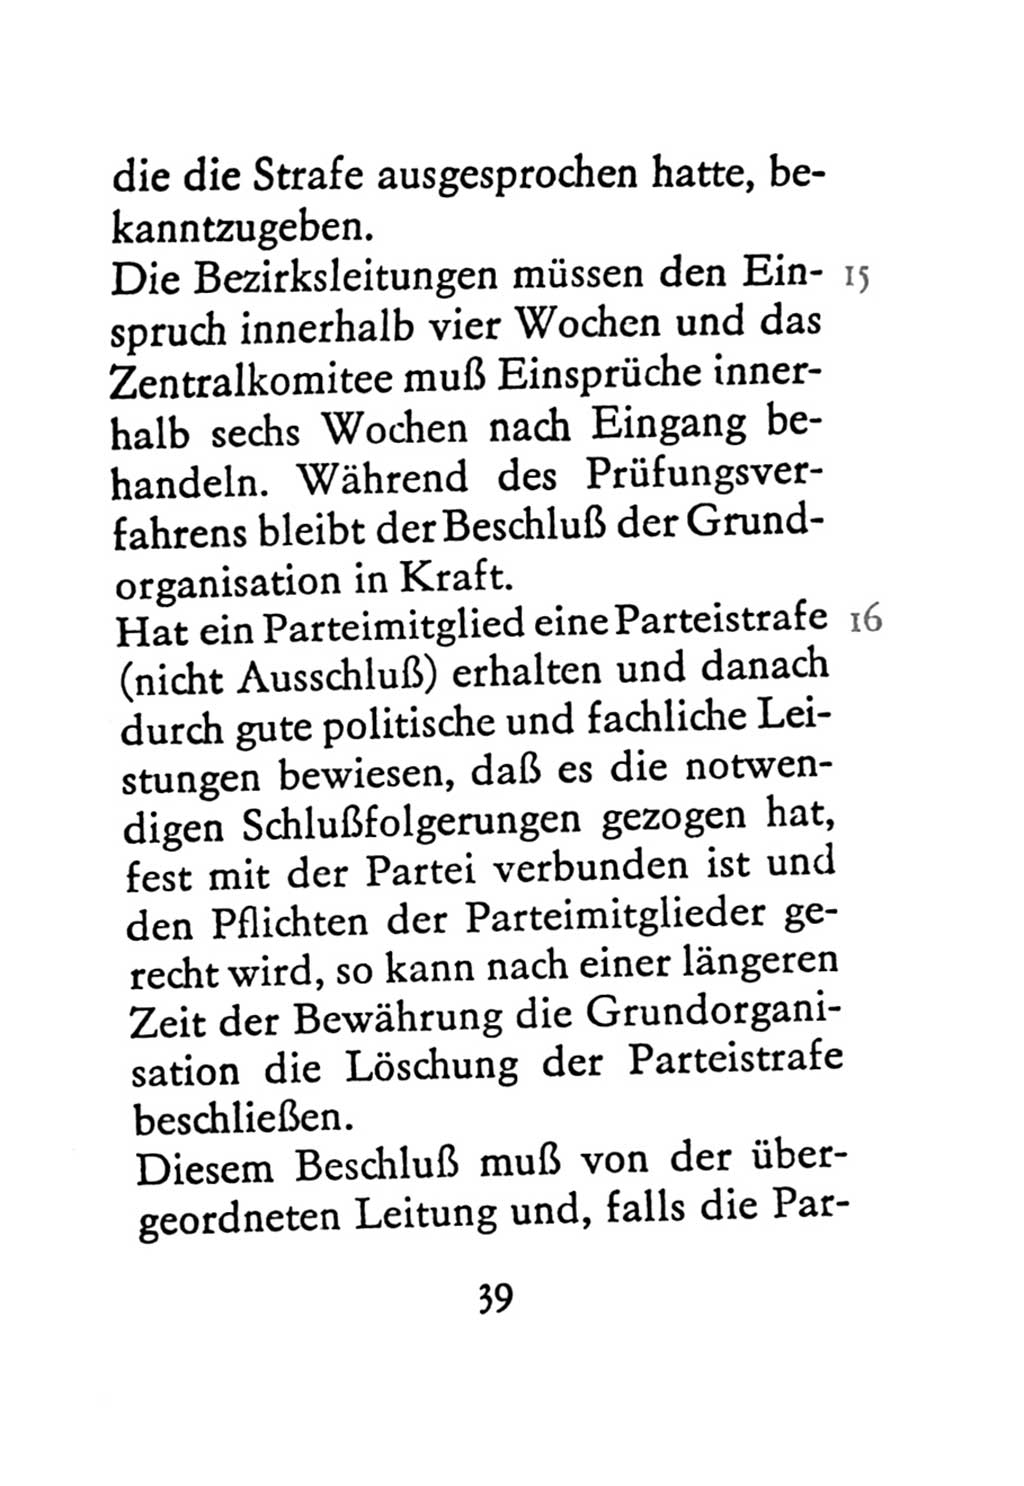 Statut der Sozialistischen Einheitspartei Deutschlands (SED) 1971, Seite 39 (St. SED DDR 1971, S. 39)